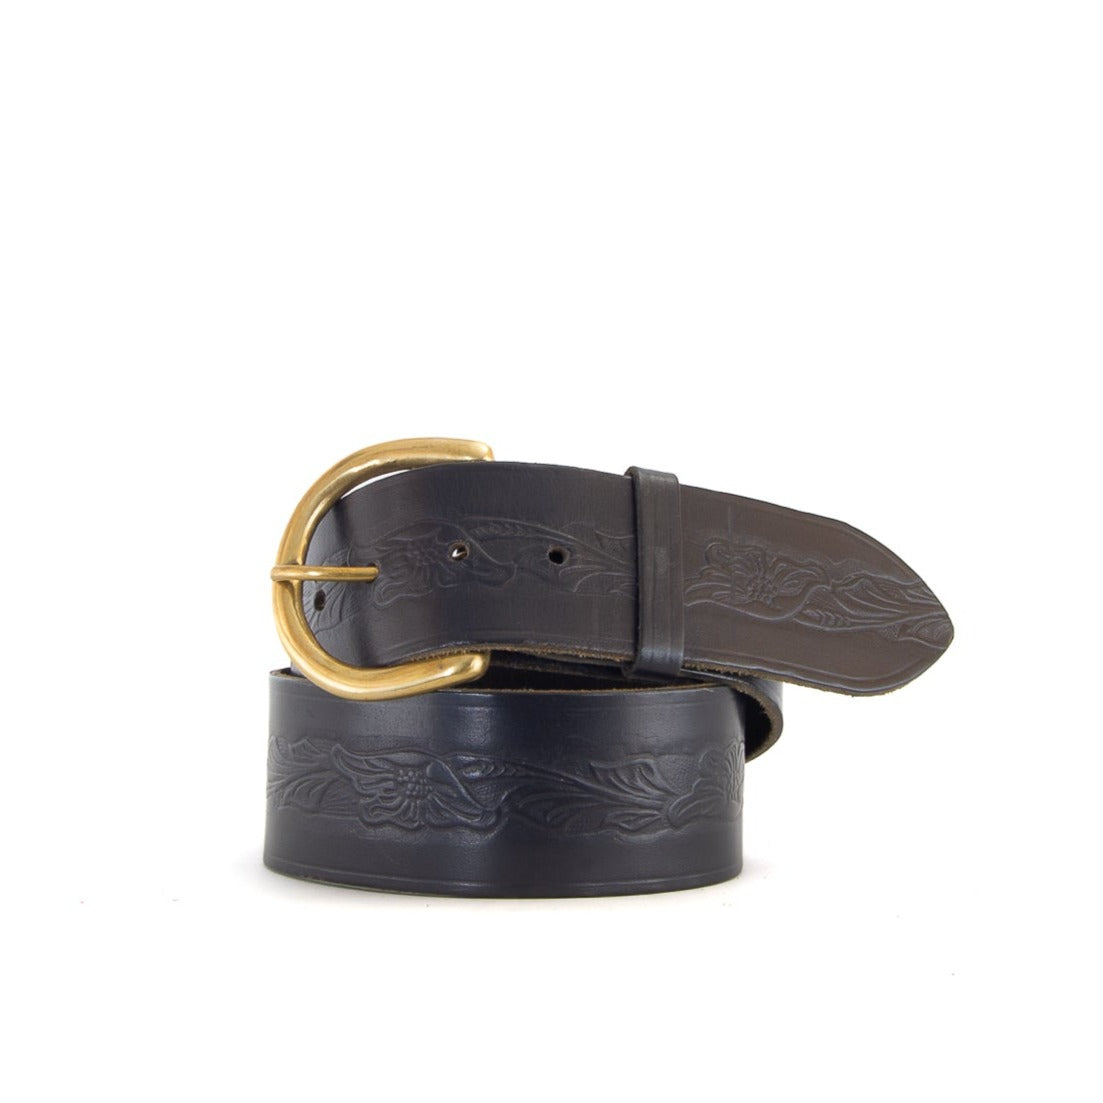 Embossed Black Leather Belt | 2" Wide | 27" - 30"